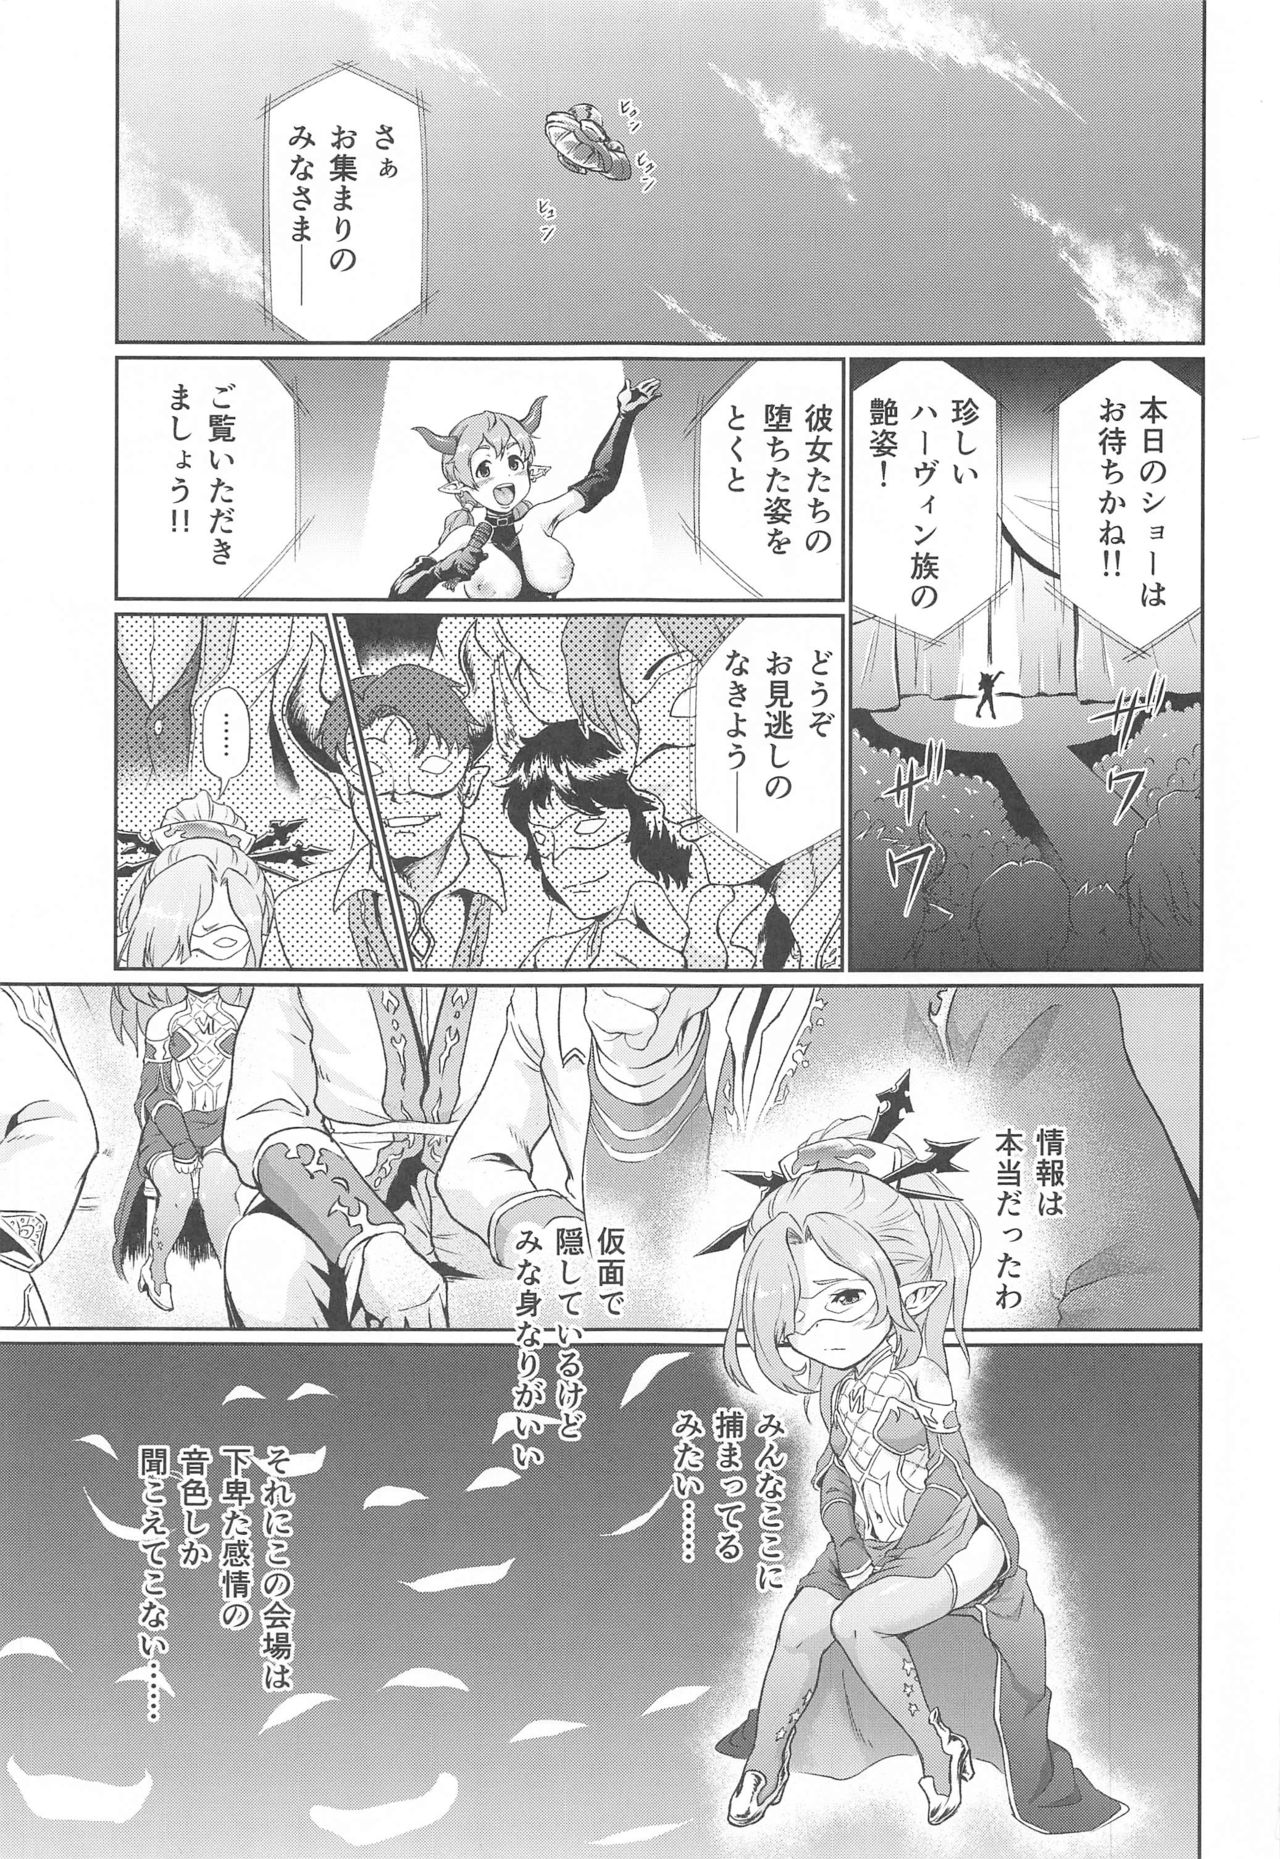 [Inudamashi (Akainu Pochi)] Sora no Soko Nio no Baai (Granblue Fantasy) page 2 full